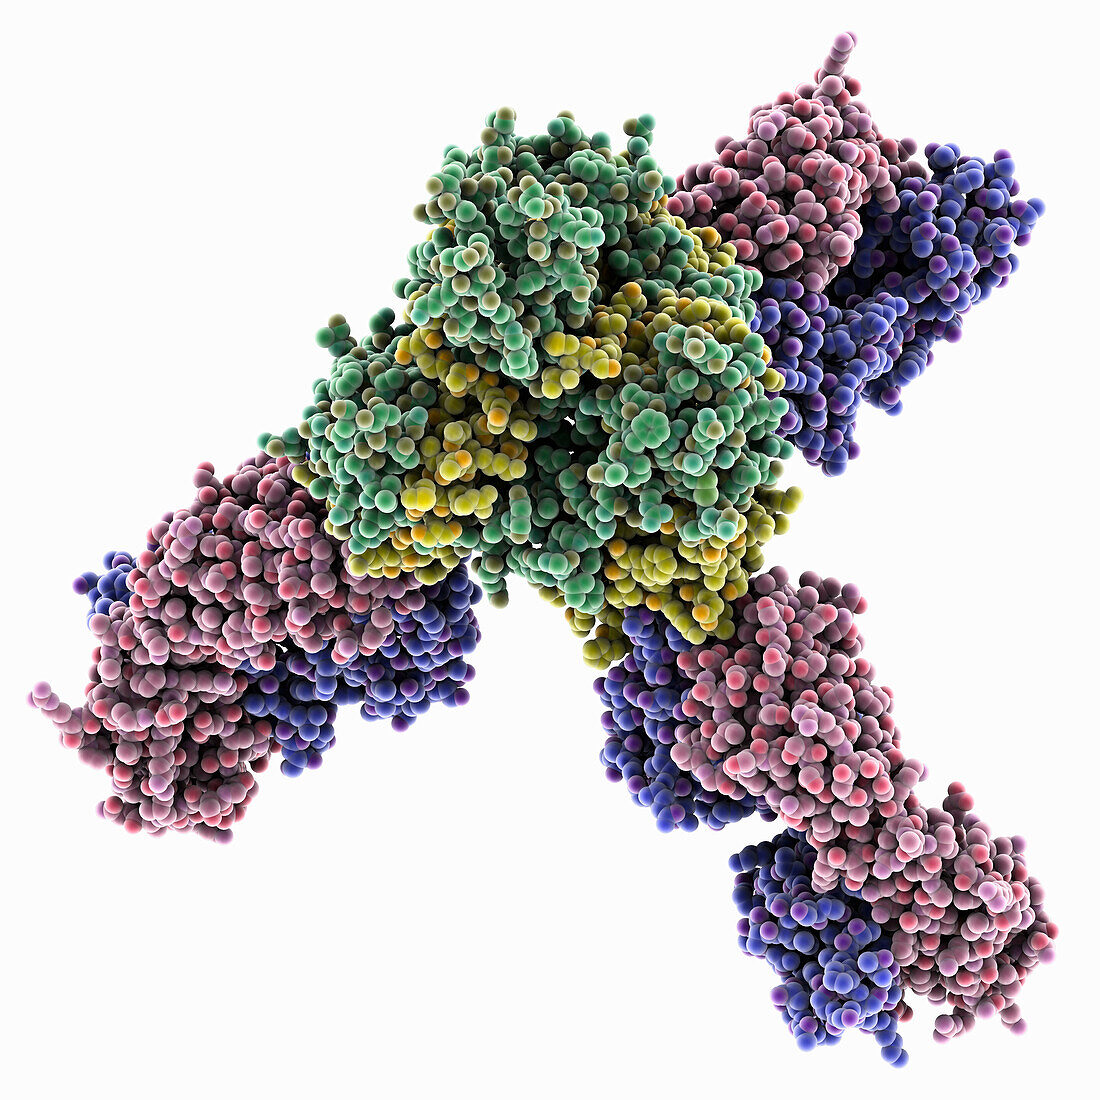 Marburg virus glycoprotein GP complex, molecular model